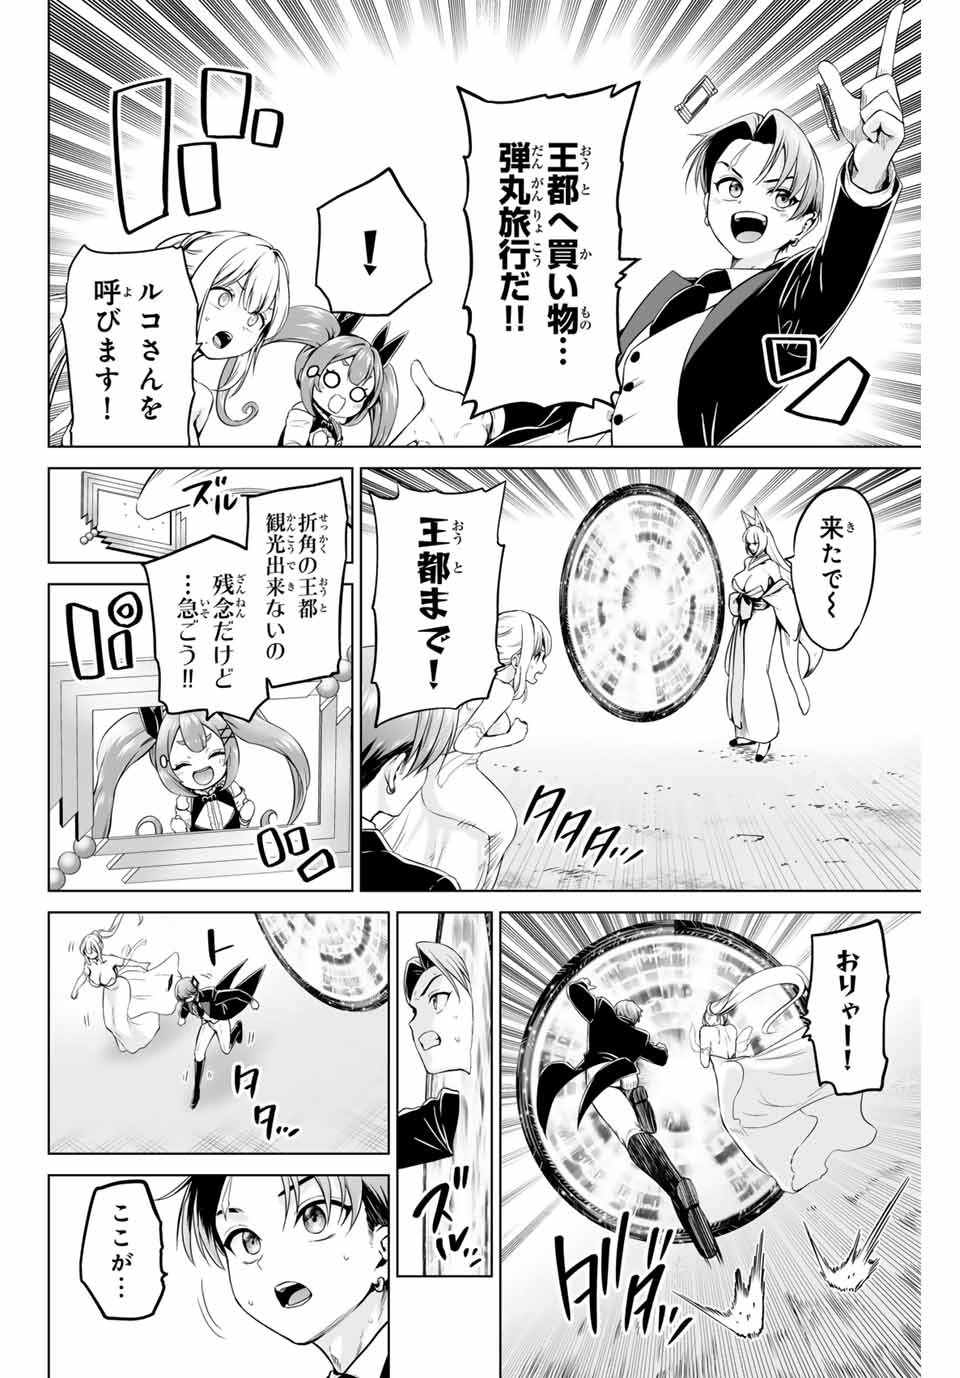 Gunshin No Takuto - Chapter 20 - Page 4